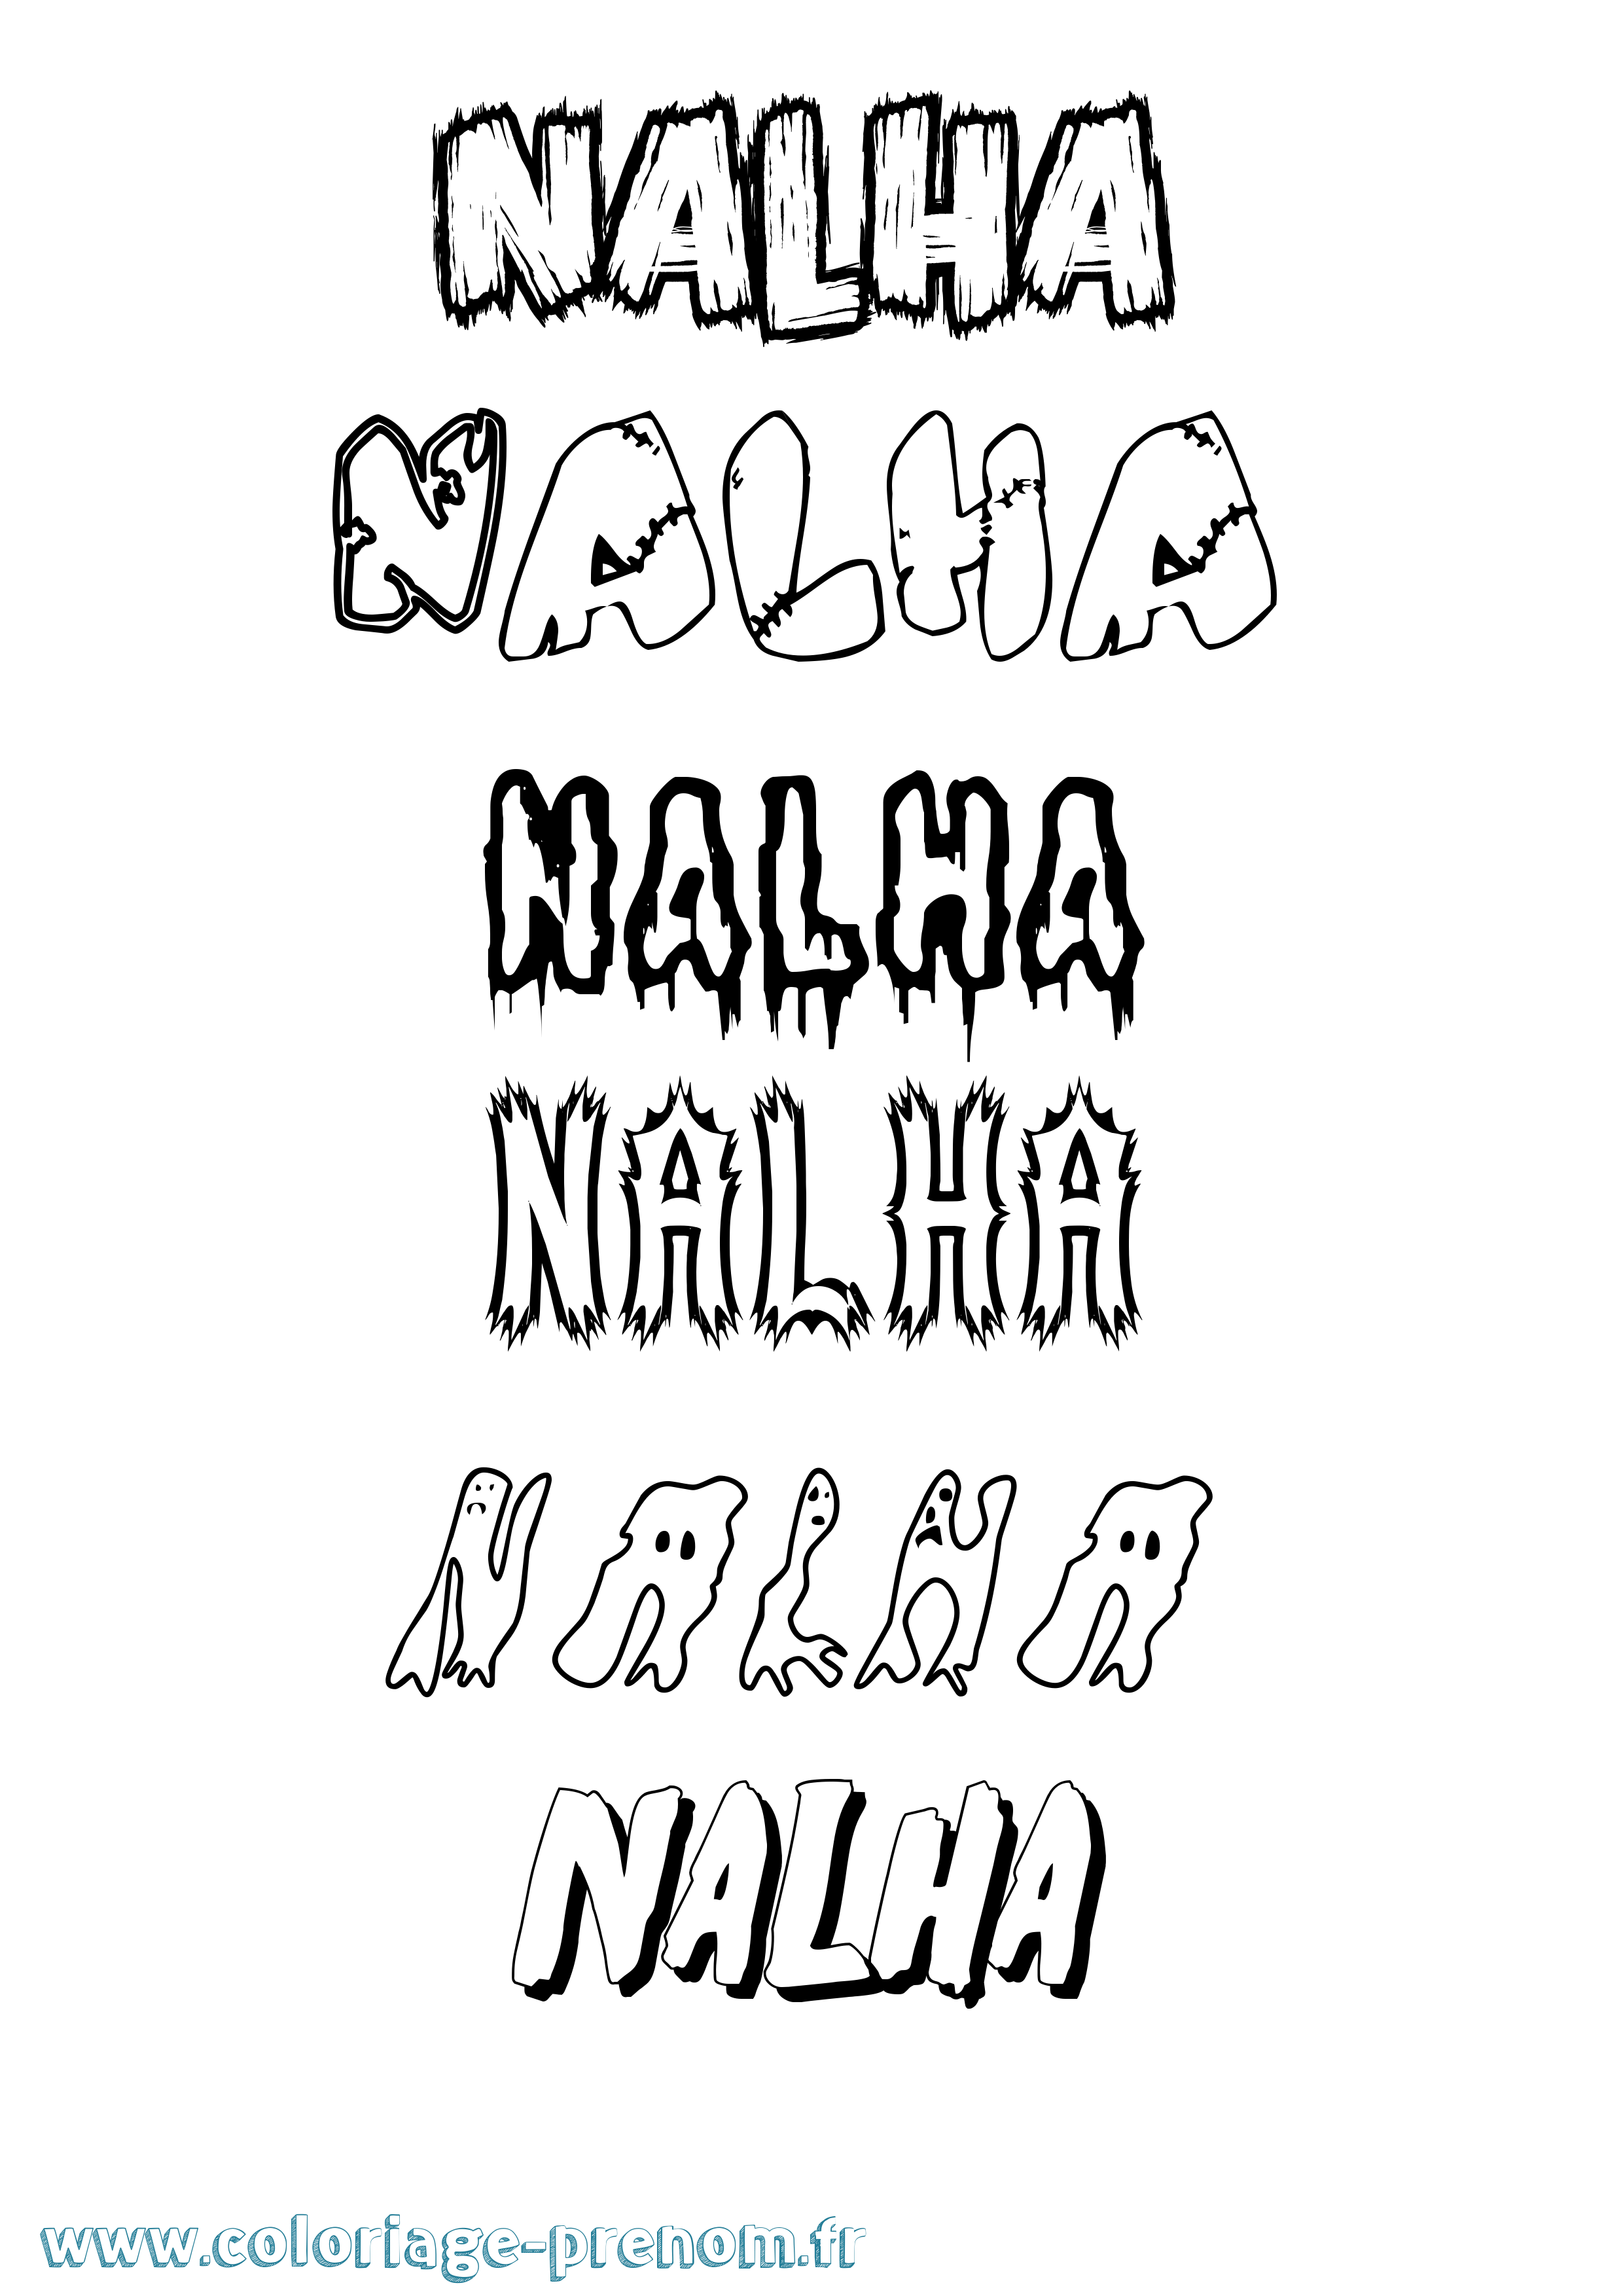 Coloriage prénom Nalha Frisson